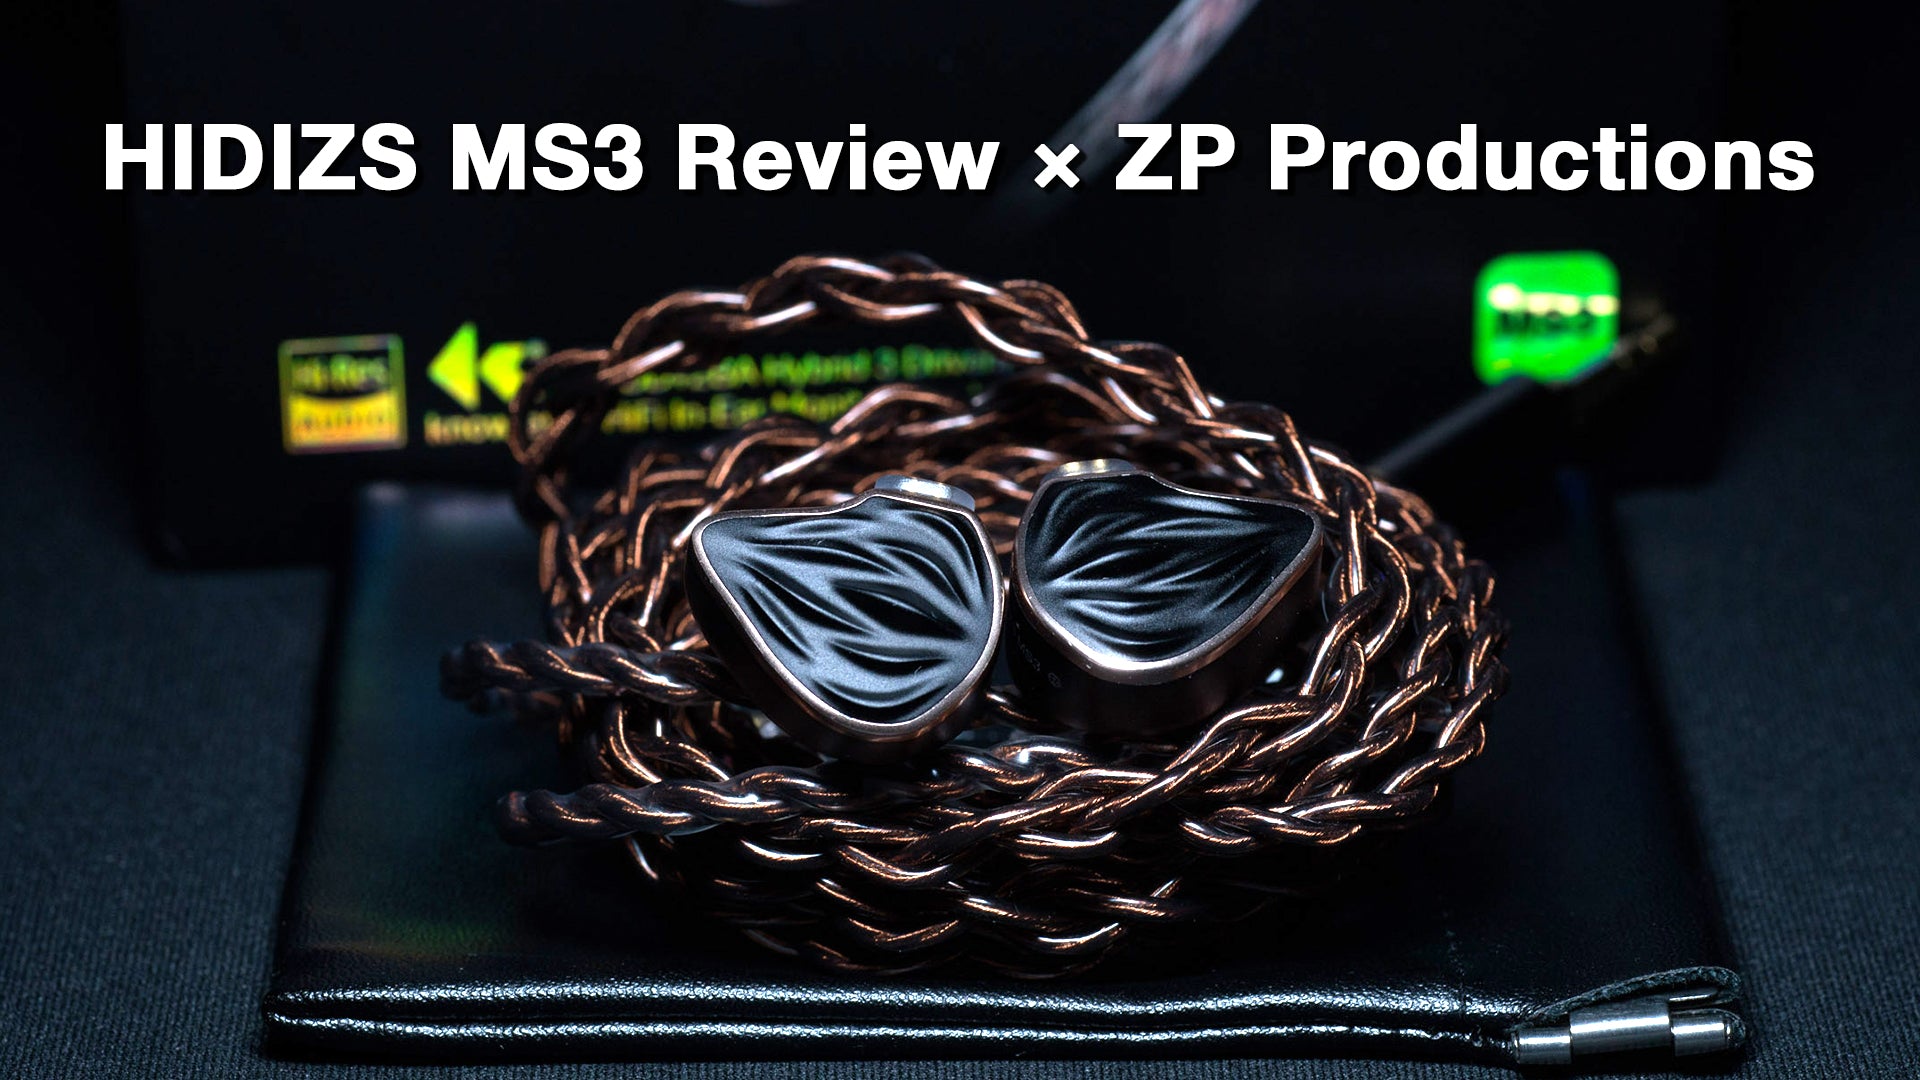 HIDIZS MS3 Review - ZP Productions